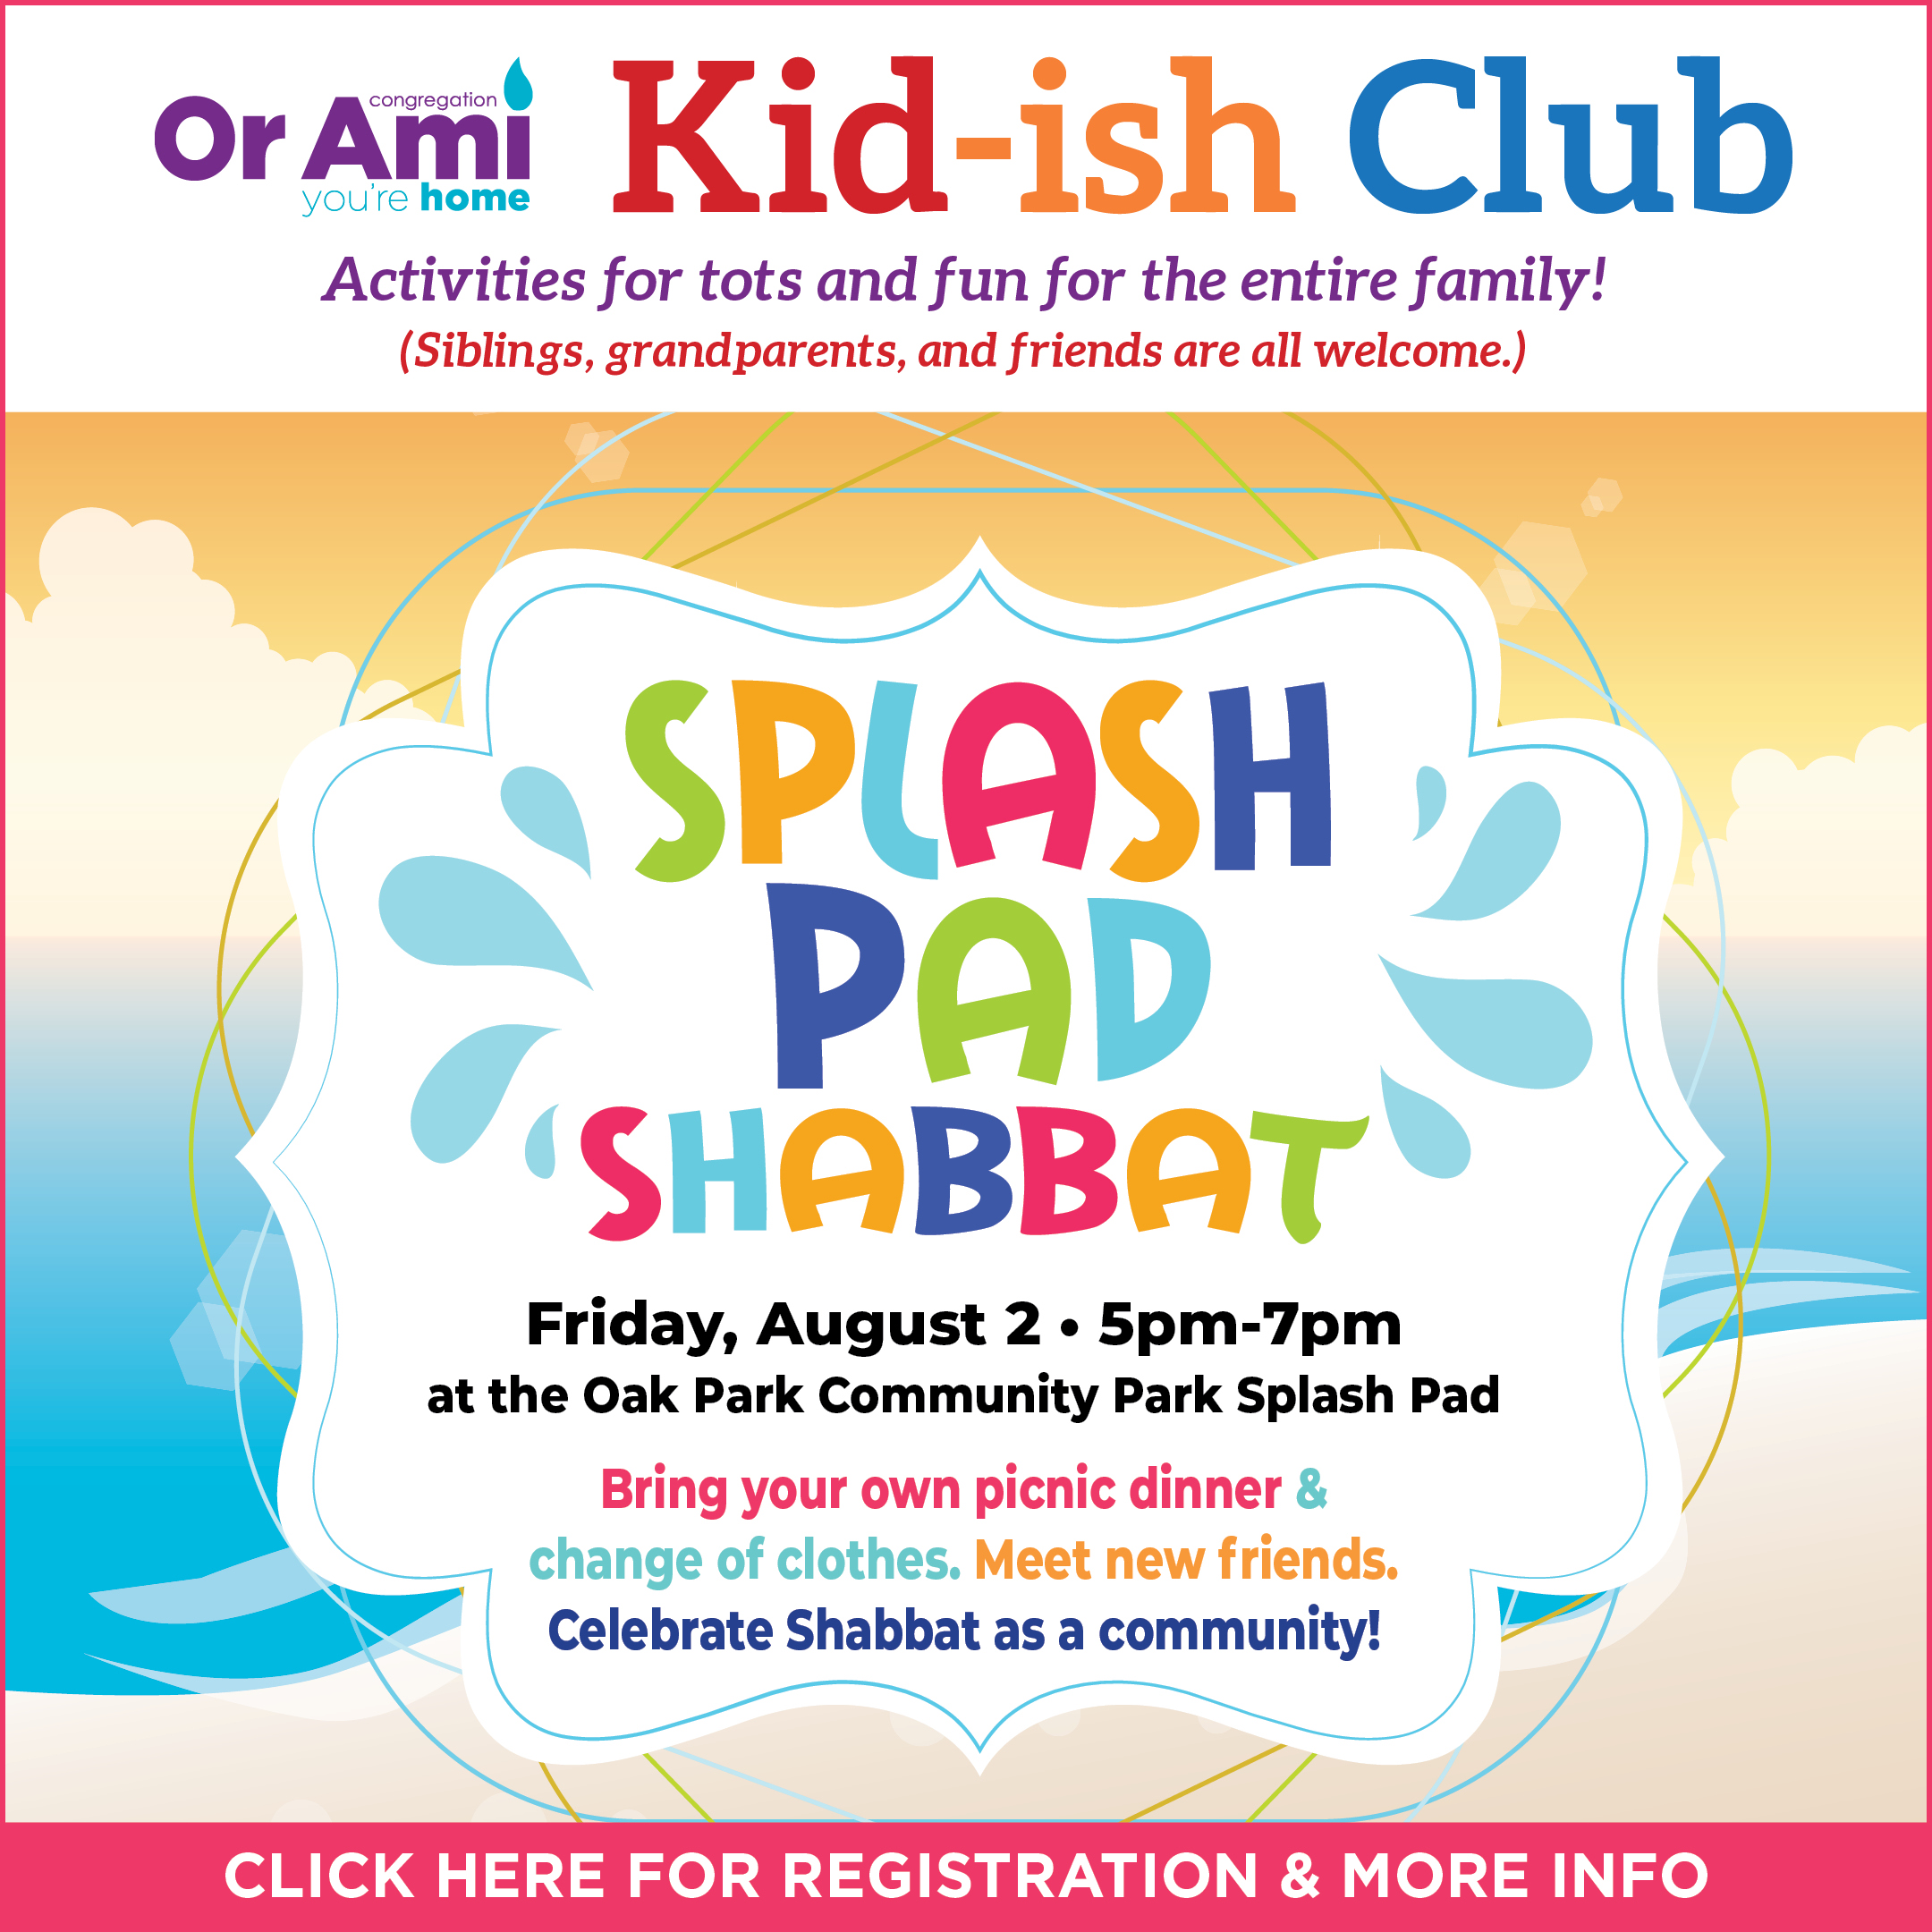 *1 Or Ami Kiddish Club Splash Pad Shabbat CLICK